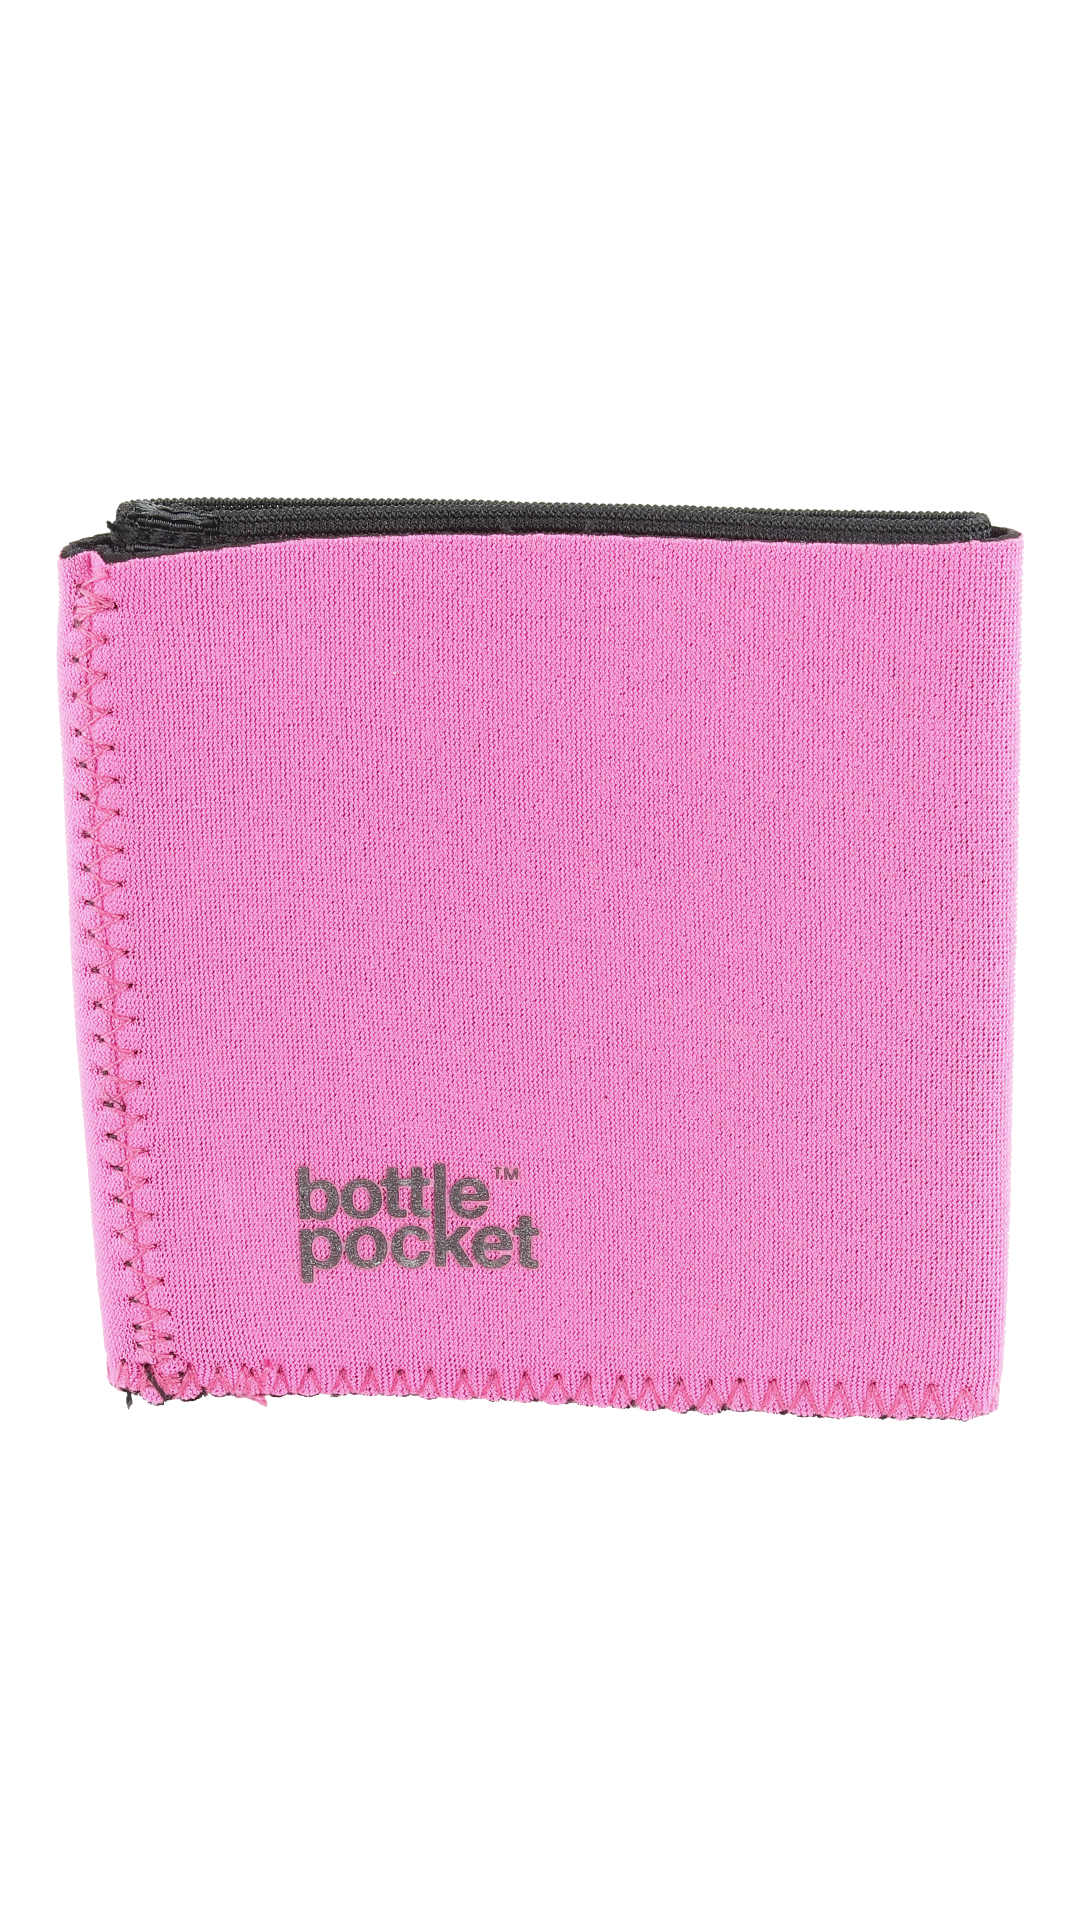 Bottle Pocket | The Pocket for your Bottle